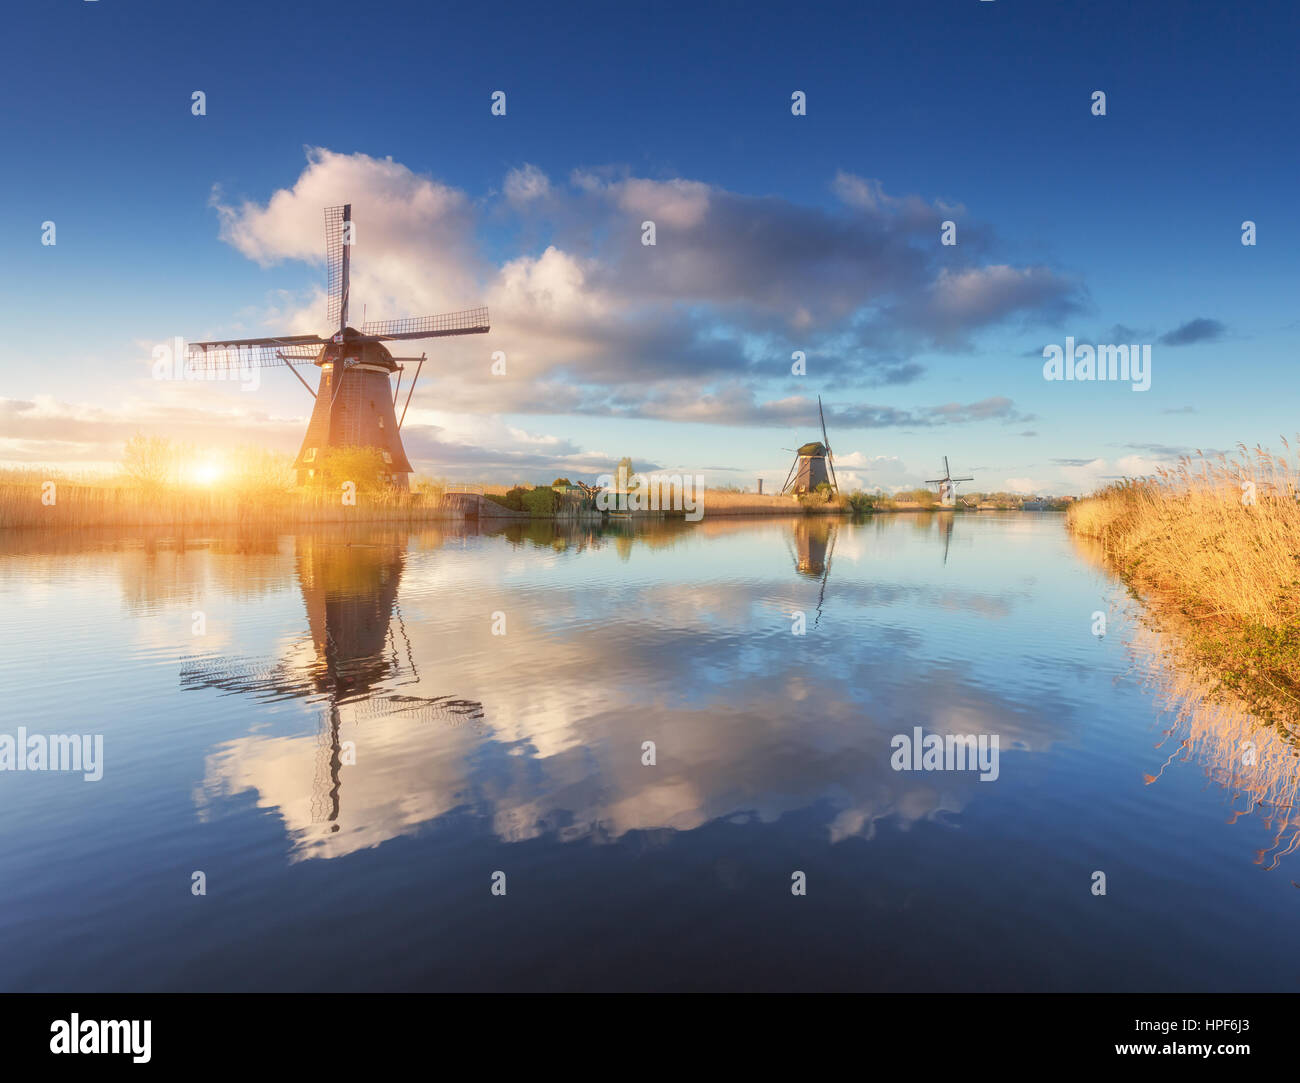 Windmühlen bei Sonnenaufgang. Rustikale Landschaft mit erstaunlichen holländische Windmühlen in der Nähe der Wasserkanäle mit blauen Himmel und Wolken spiegeln sich in Wasser Stockfoto